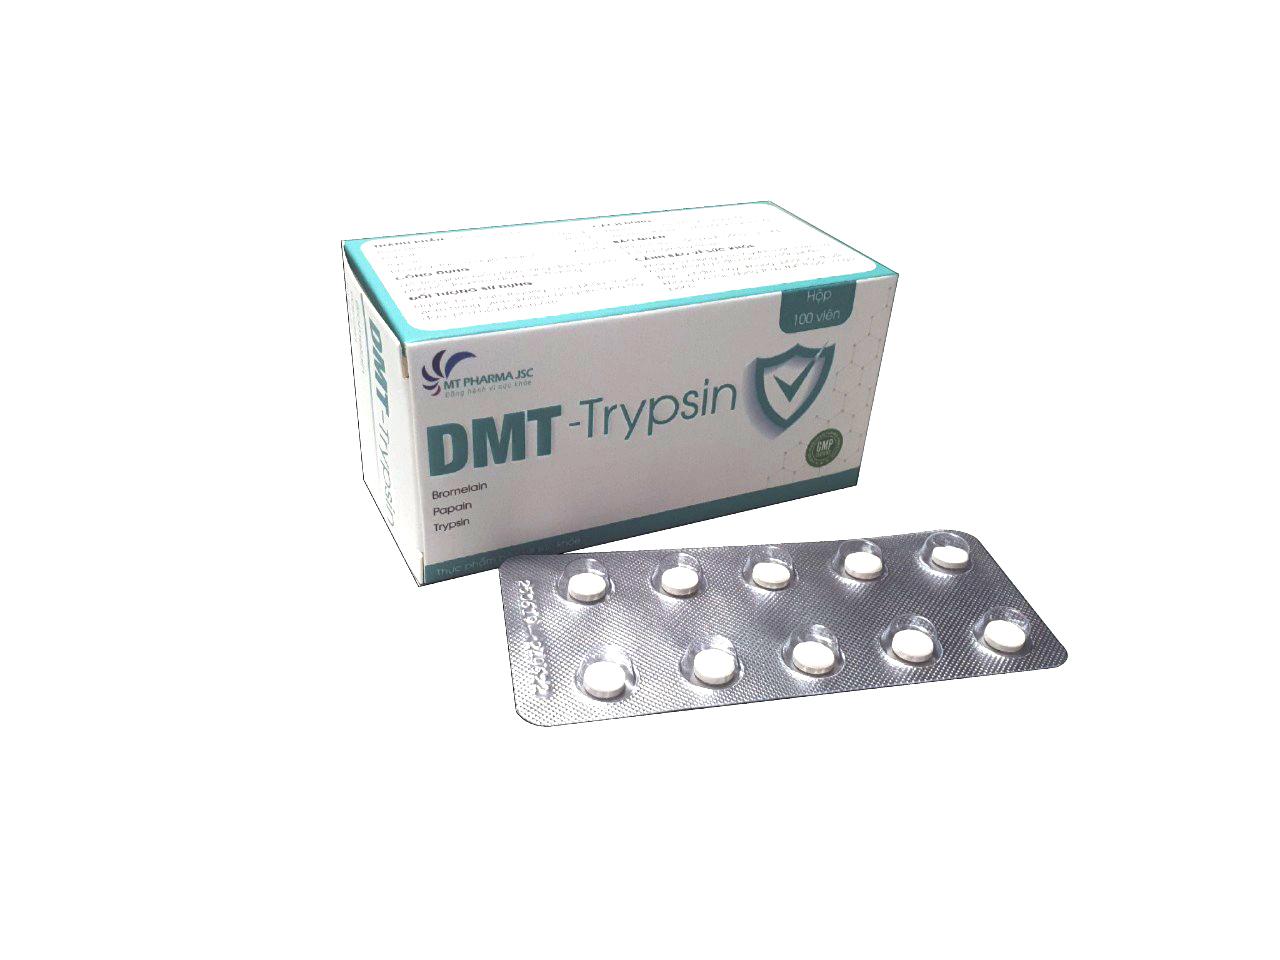 DMT-Trypsin